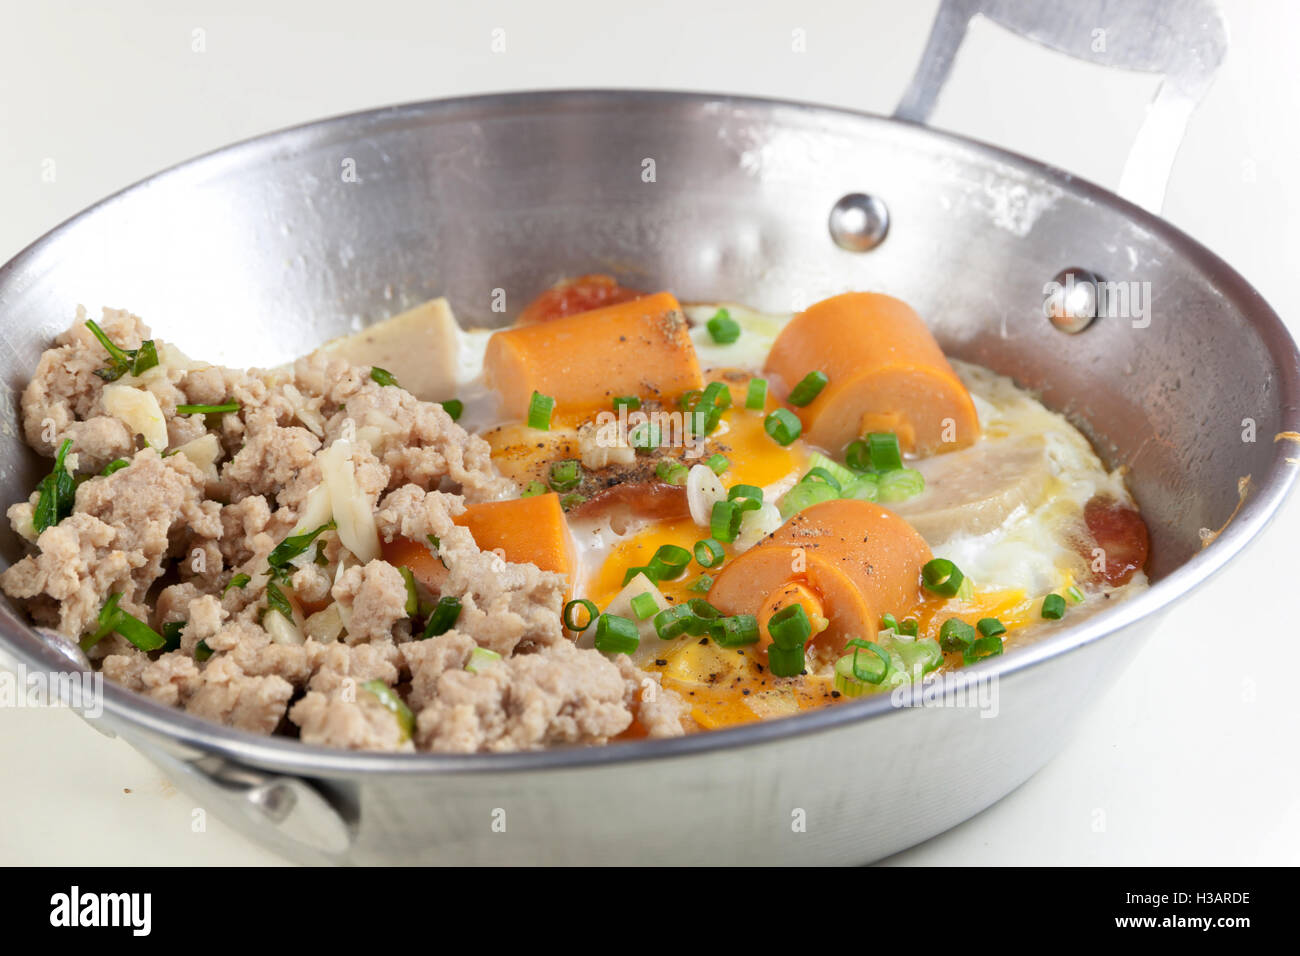 Nahaufnahme von Indochina gebratenem Ei mit Schweinefleisch und Wurstwaren Belag auf weißem Hintergrund Stockfoto